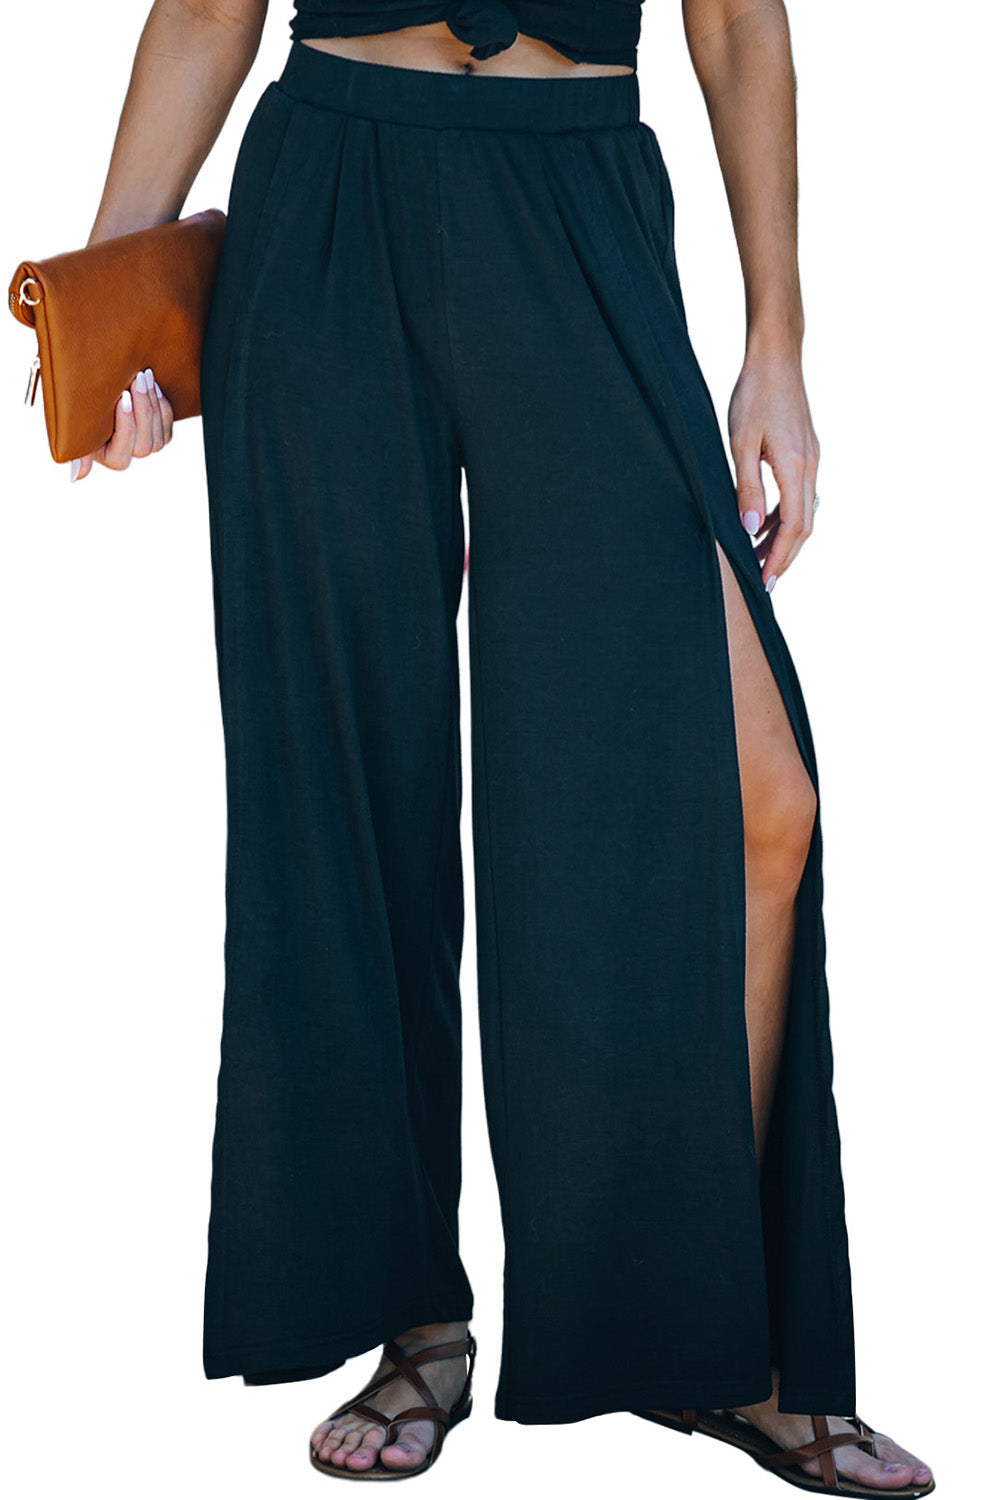 Pantalon noir taille moyenne à jambe large et fente latérale